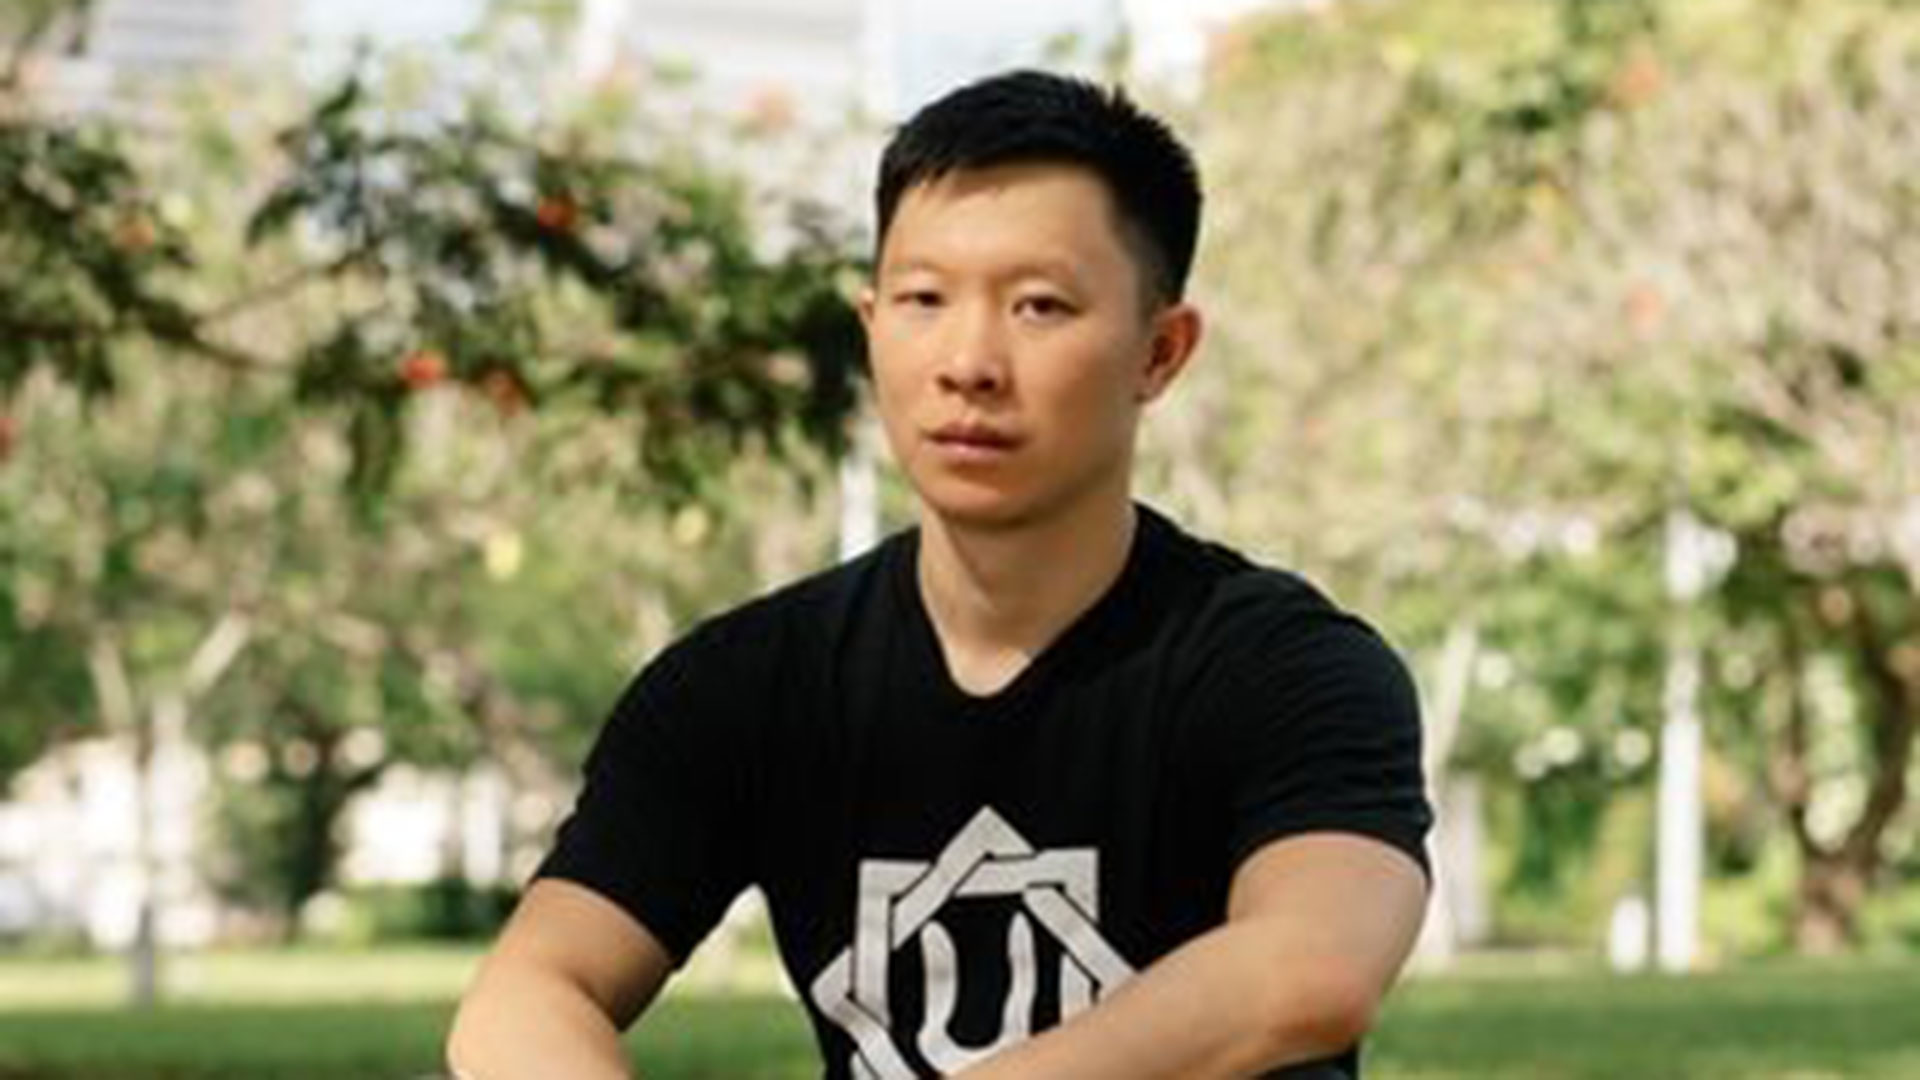 Su Zhu di basso profilo ha sviluppato una tesi su a "superciclo" dalla massiccia adozione di criptovalute